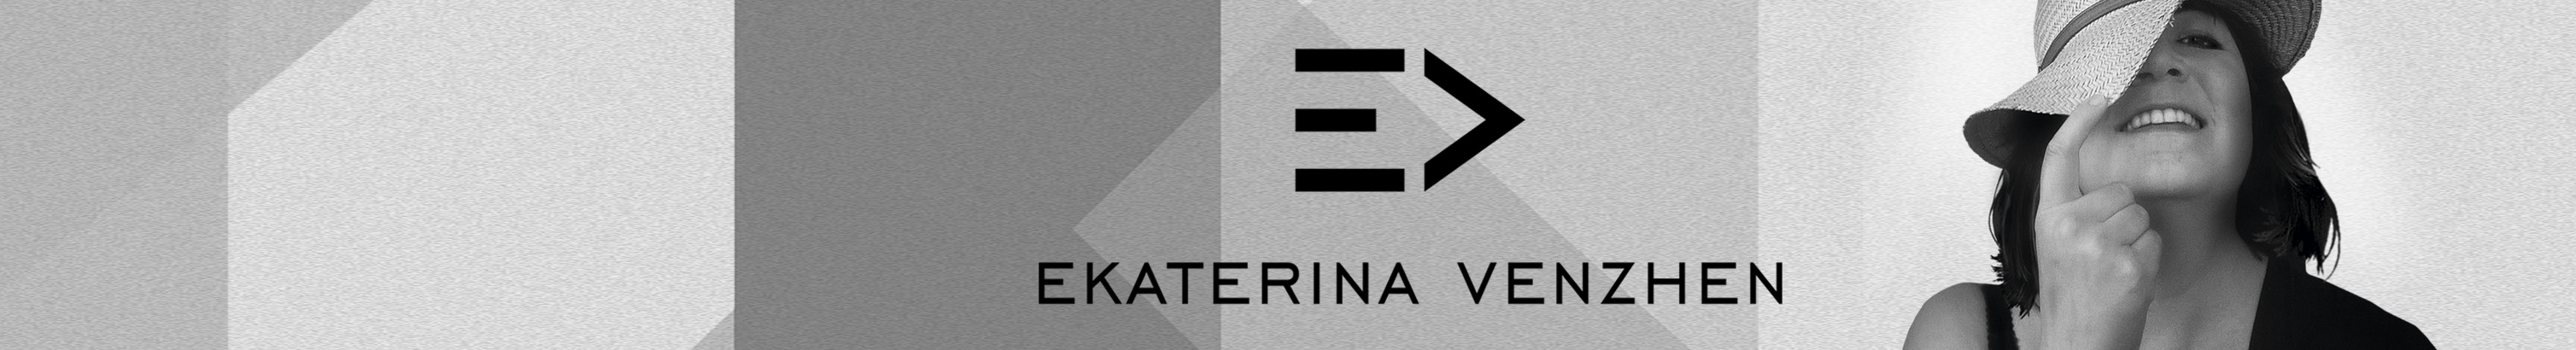 Bannière de profil de Ekaterina Venzhen